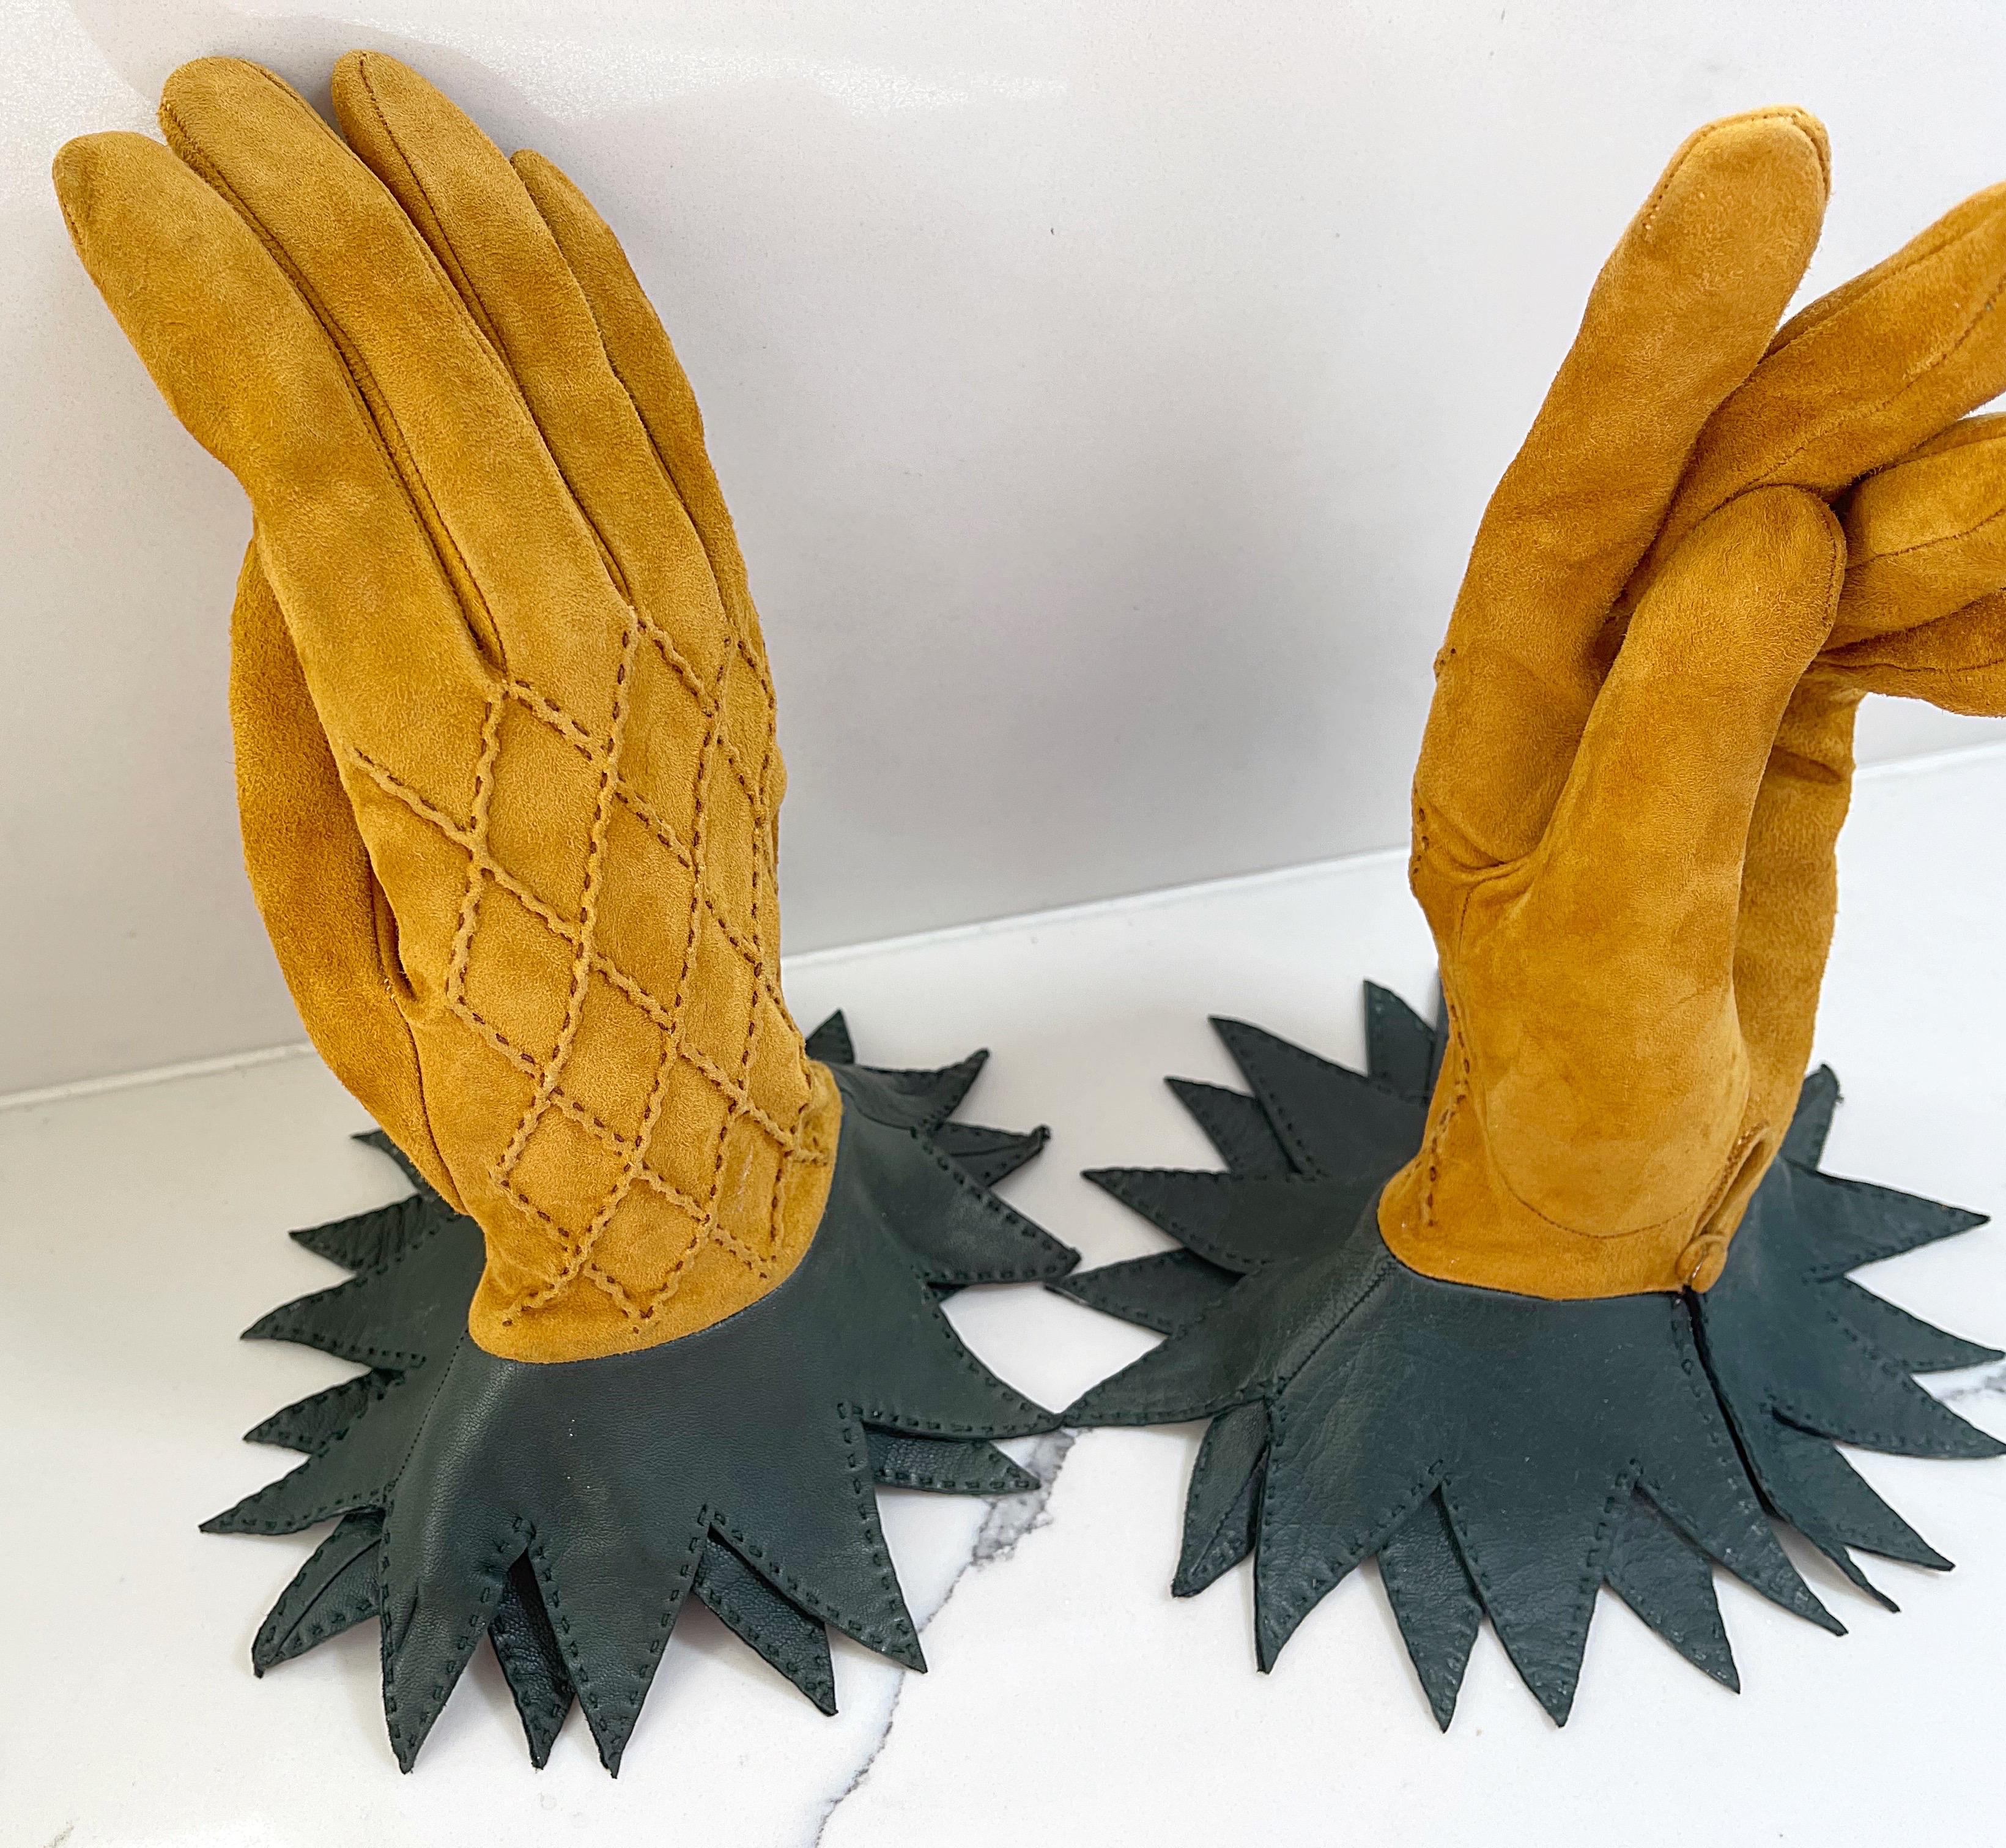 Sehr seltene und sammelbare 1990er HERMÈS Handschuhe ! Diese Schönheiten sehen aus wie Ananas und sind aus goldfarbenem, rautenförmig gestepptem Wildleder und butterweichem, grünem Leder gefertigt. Knöpfe an jeder Innenhand. 
In sehr gutem Zustand